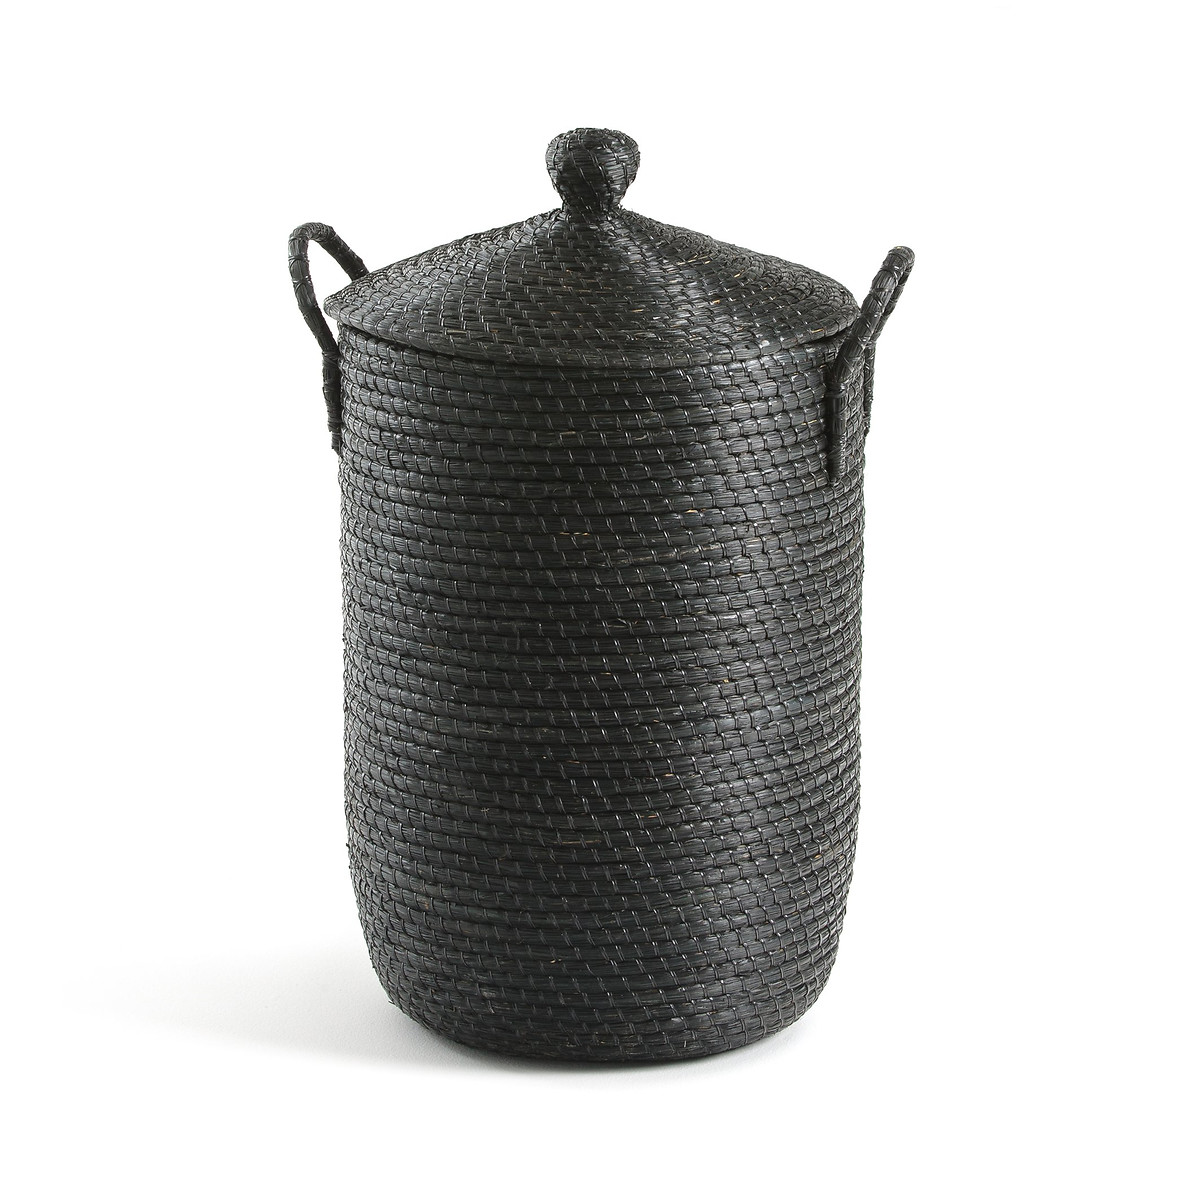 Корзина La Redoute Для белья из плетеной рисовой соломы Honoka единый размер черный - фото 1